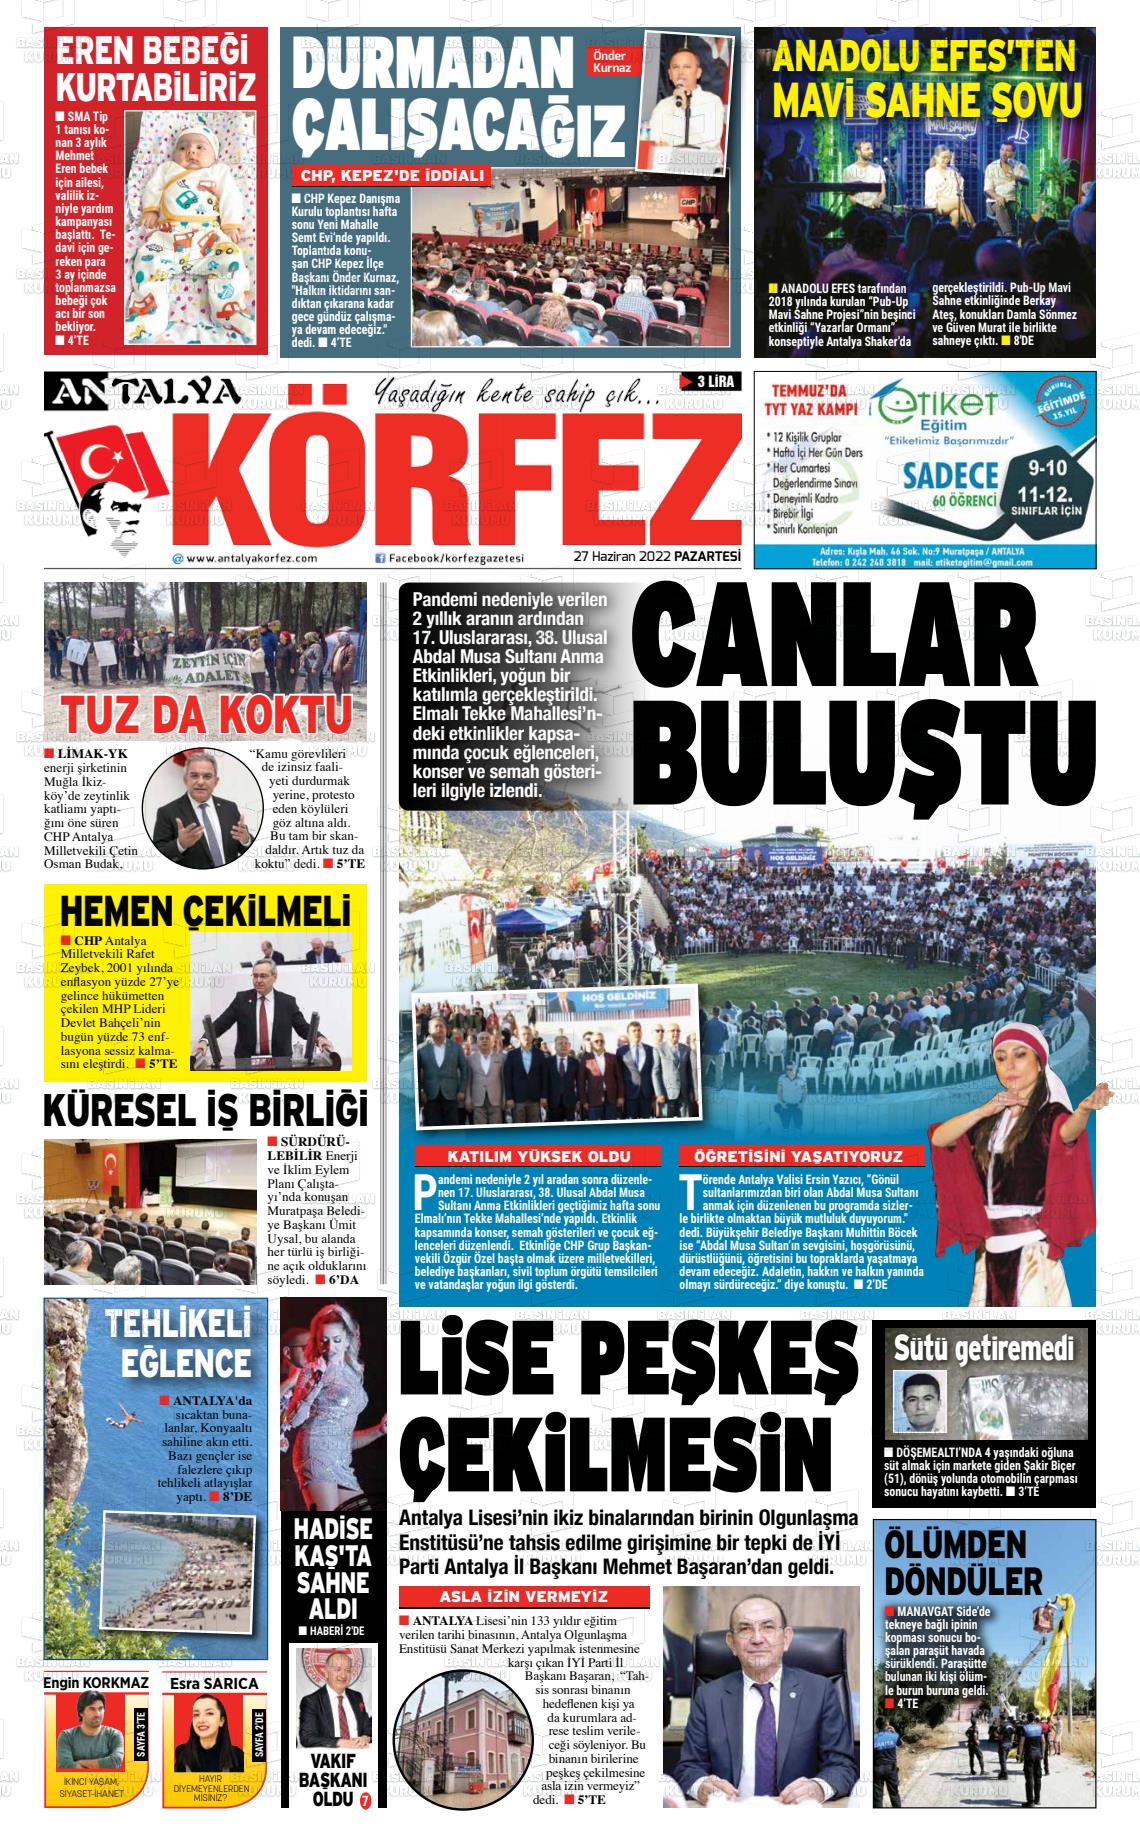 27 Haziran 2022 Antalya Körfez Gazete Manşeti